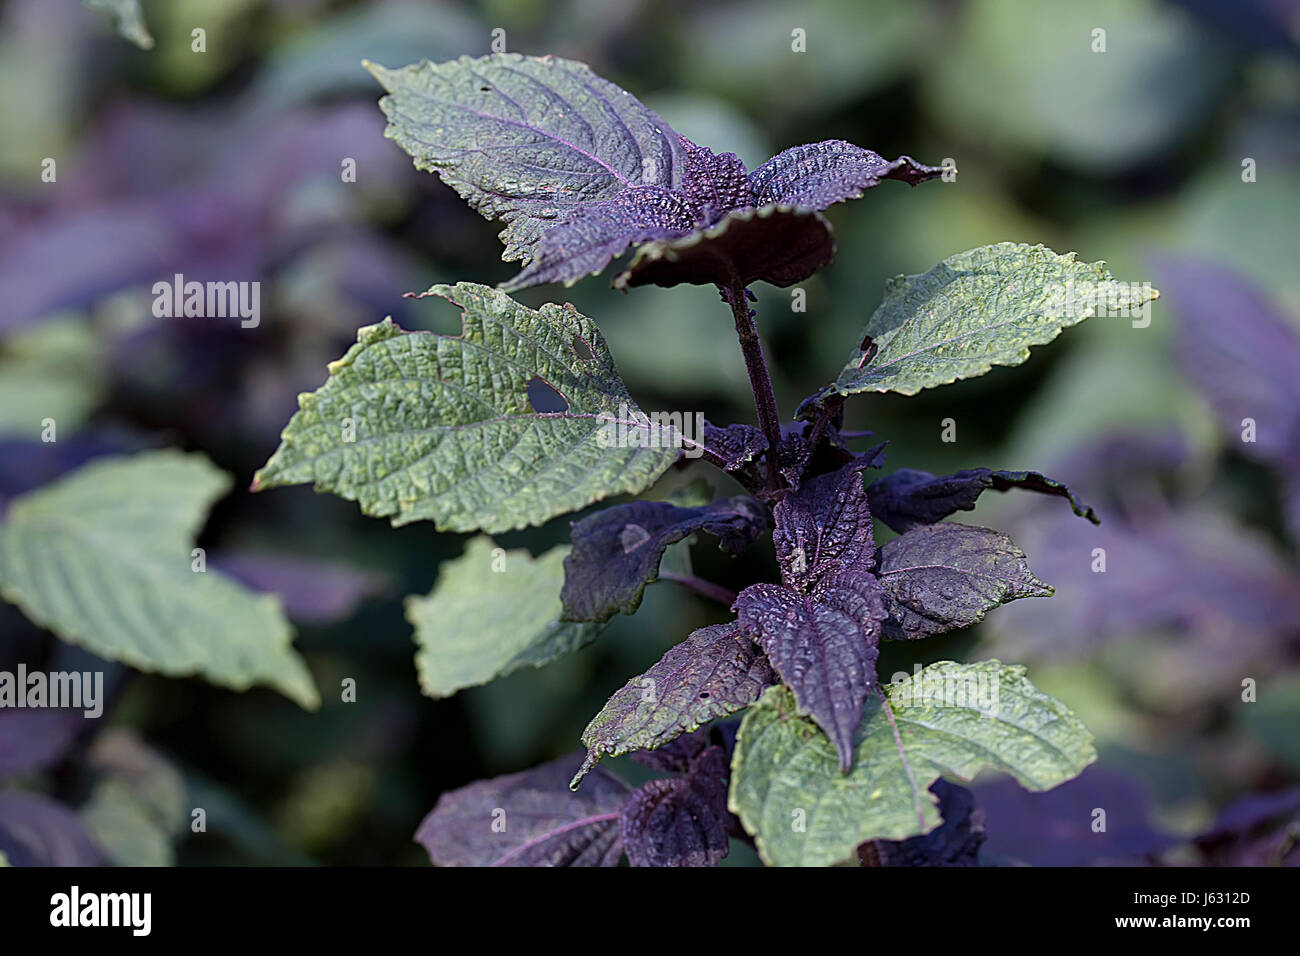 leaves homeopathy herb medicinal plant melissa herbs macro close-up macro Stock Photo